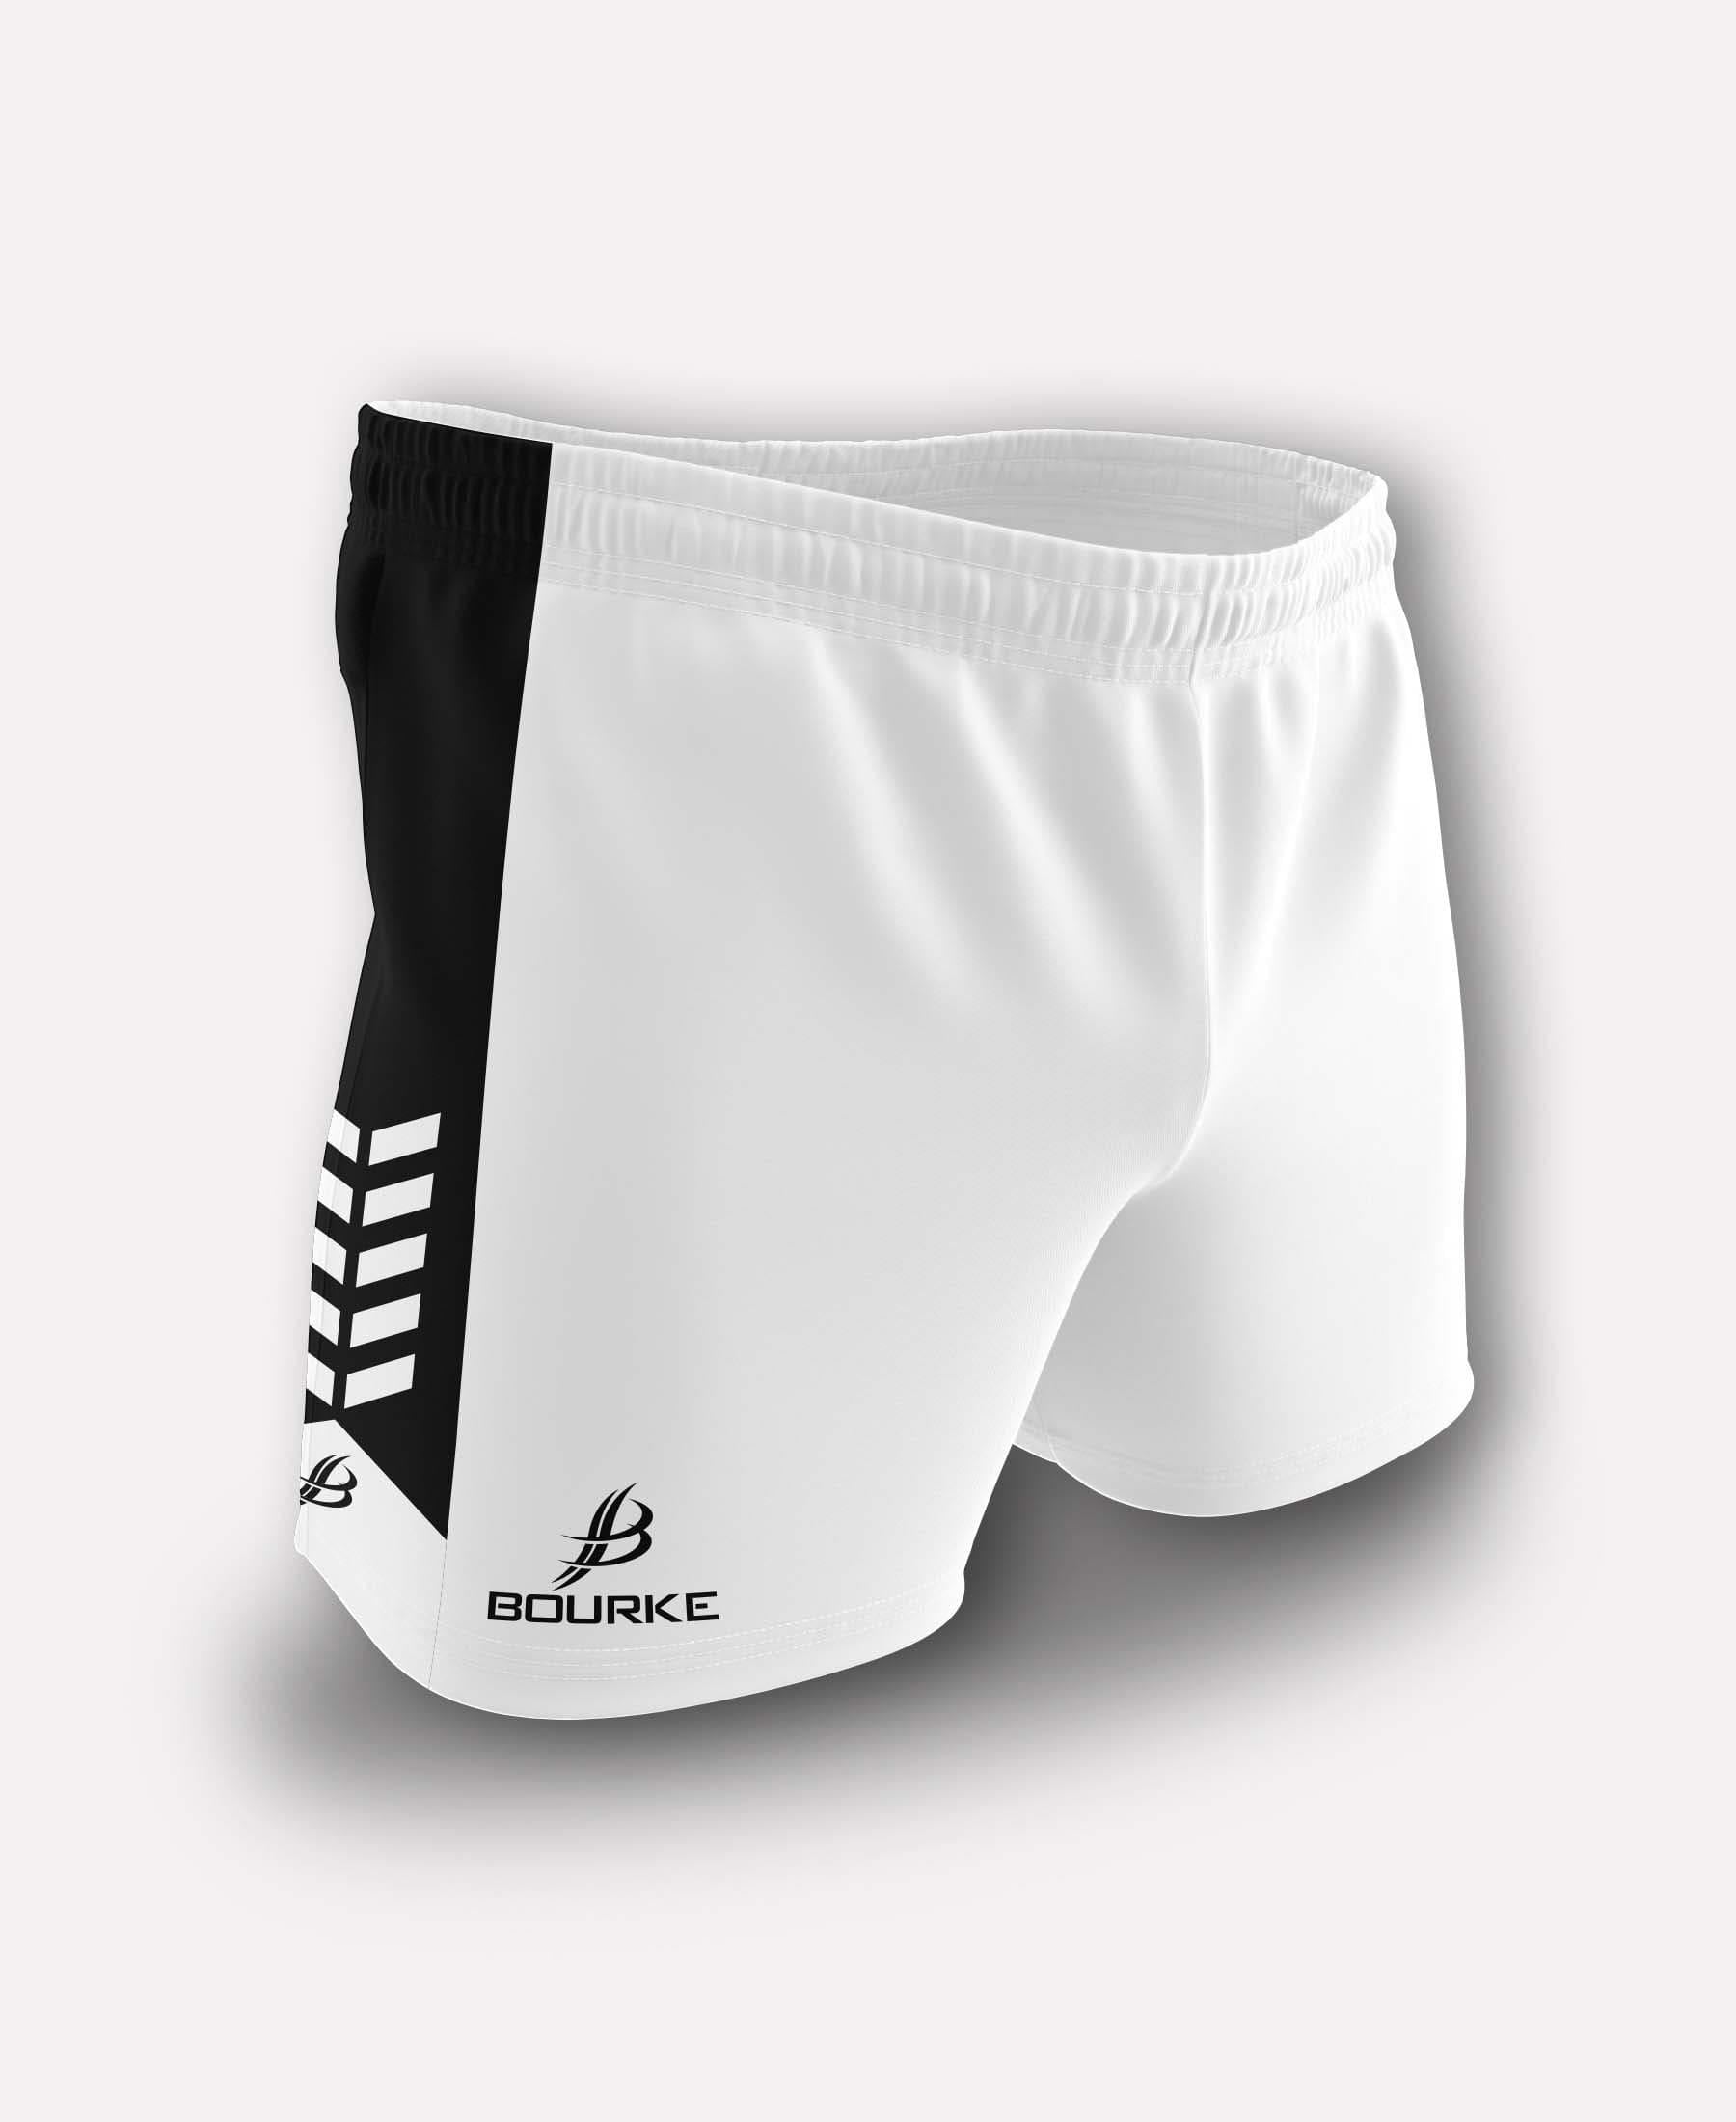 Chevron Kids Shorts (White/Black) - Bourke Sports Limited